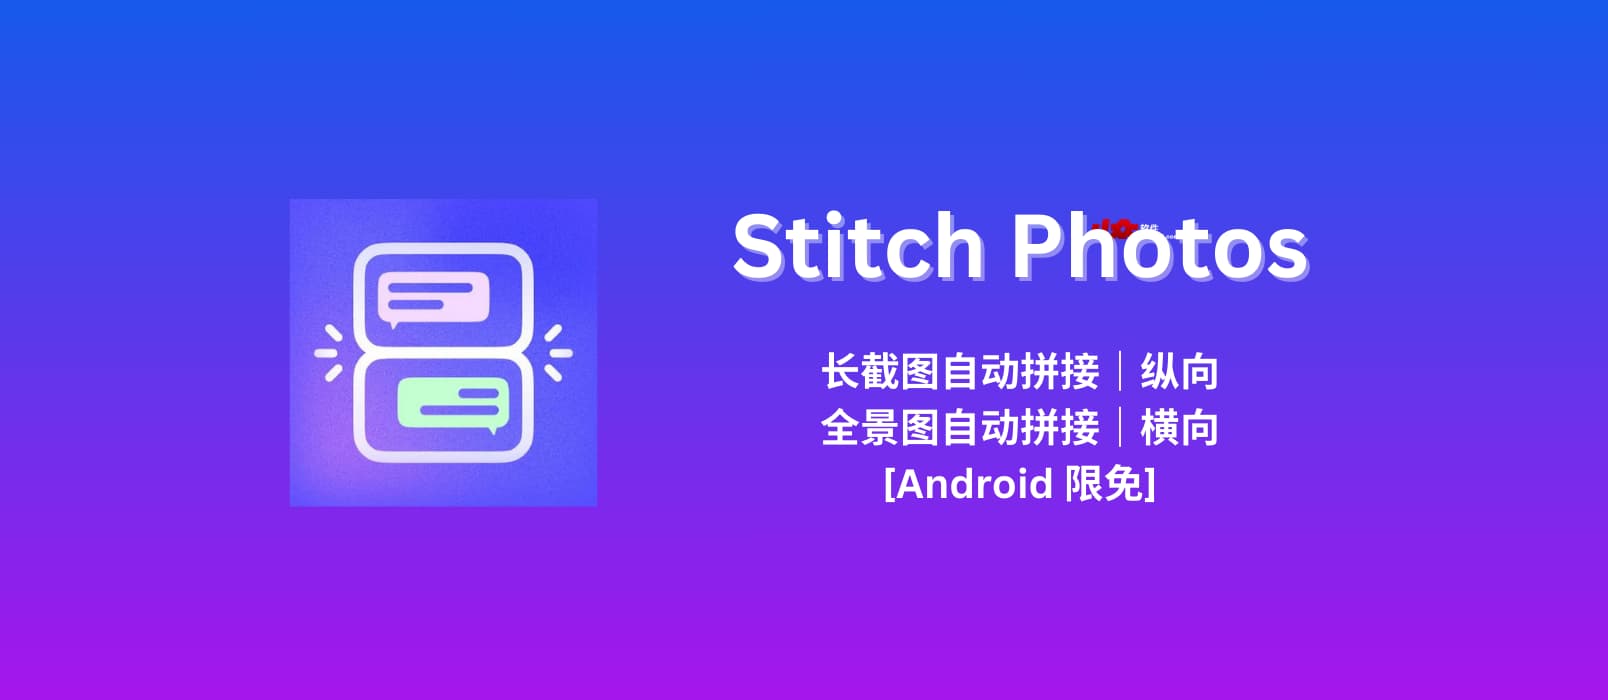 Stitch Photos - 长截图自动拼接工具｜全景照片自动拼接工具[Android 限免]